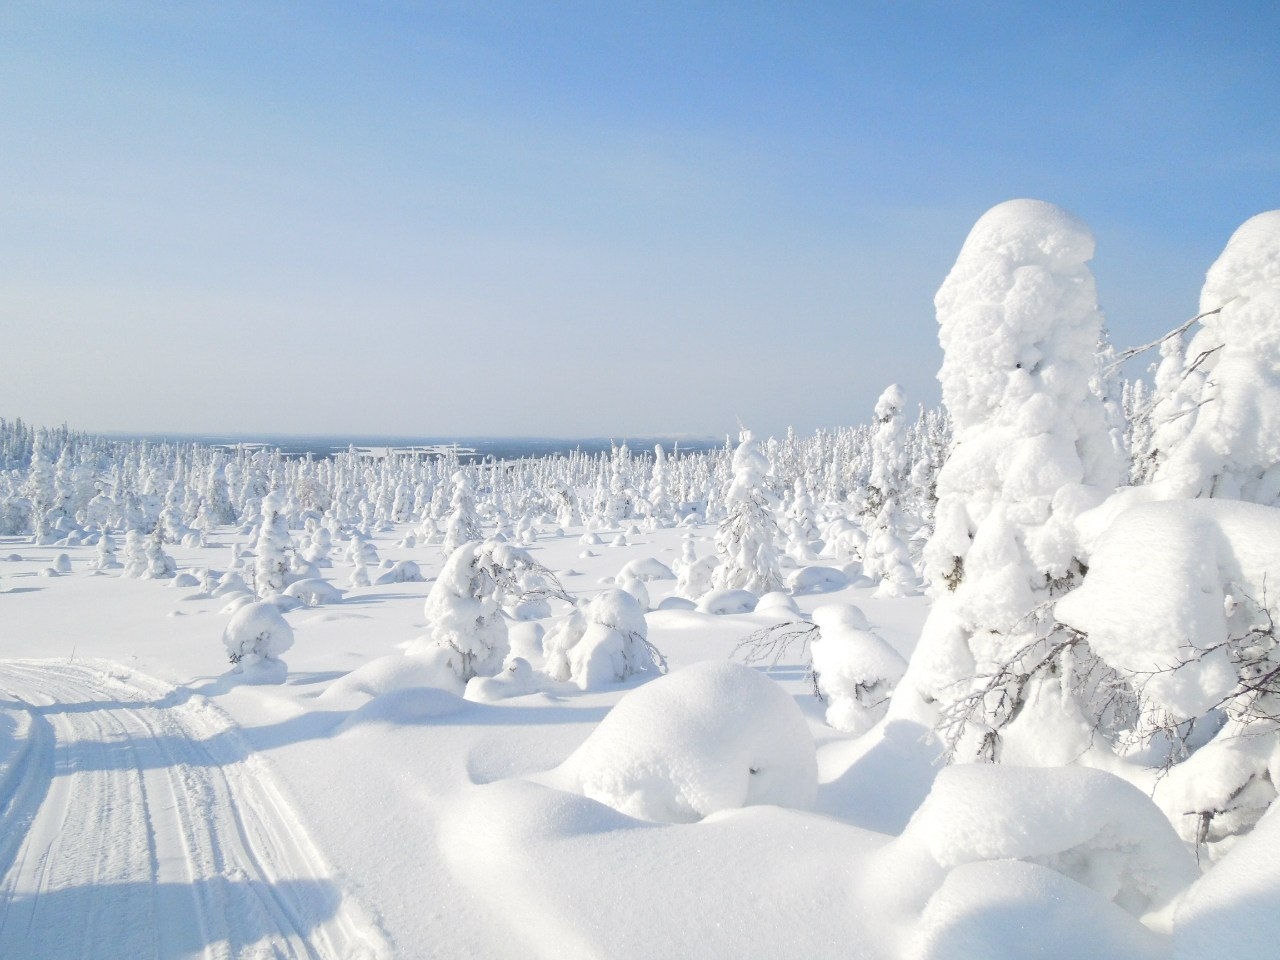 Снежка россия. Национальный парк Паанаярви зимой. Парк Паанаярви Карелия зимой. Карелия понаярови зима. Снежная Карелия.